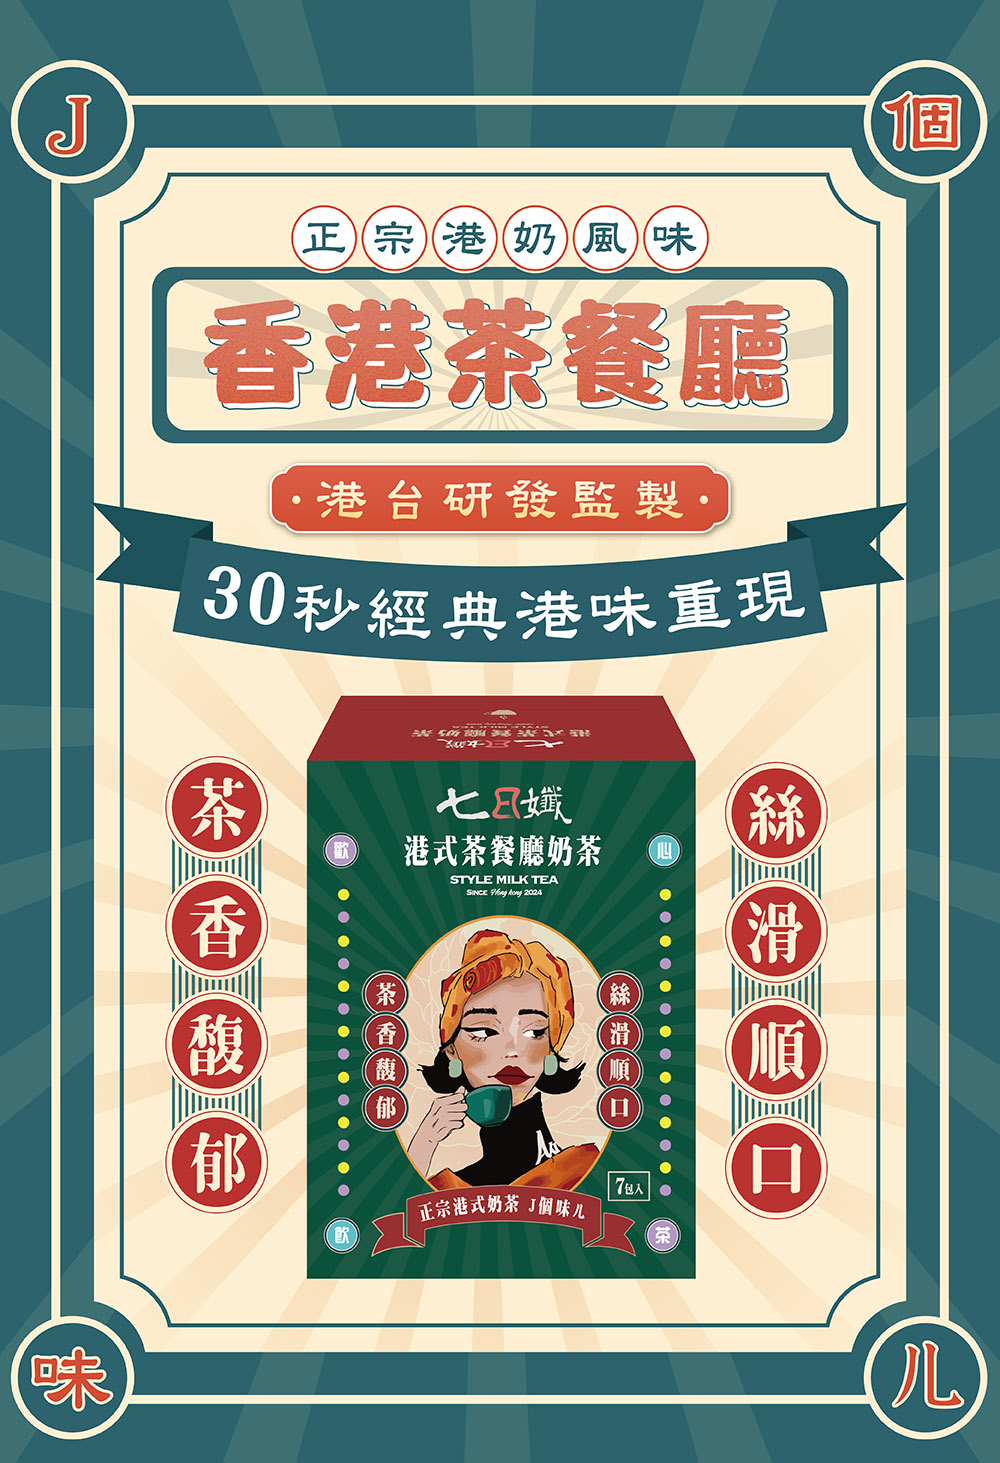 【家家生醫】七日孅-孅體茶包(7包/盒) 新上市港式奶茶 全系列6口味任選